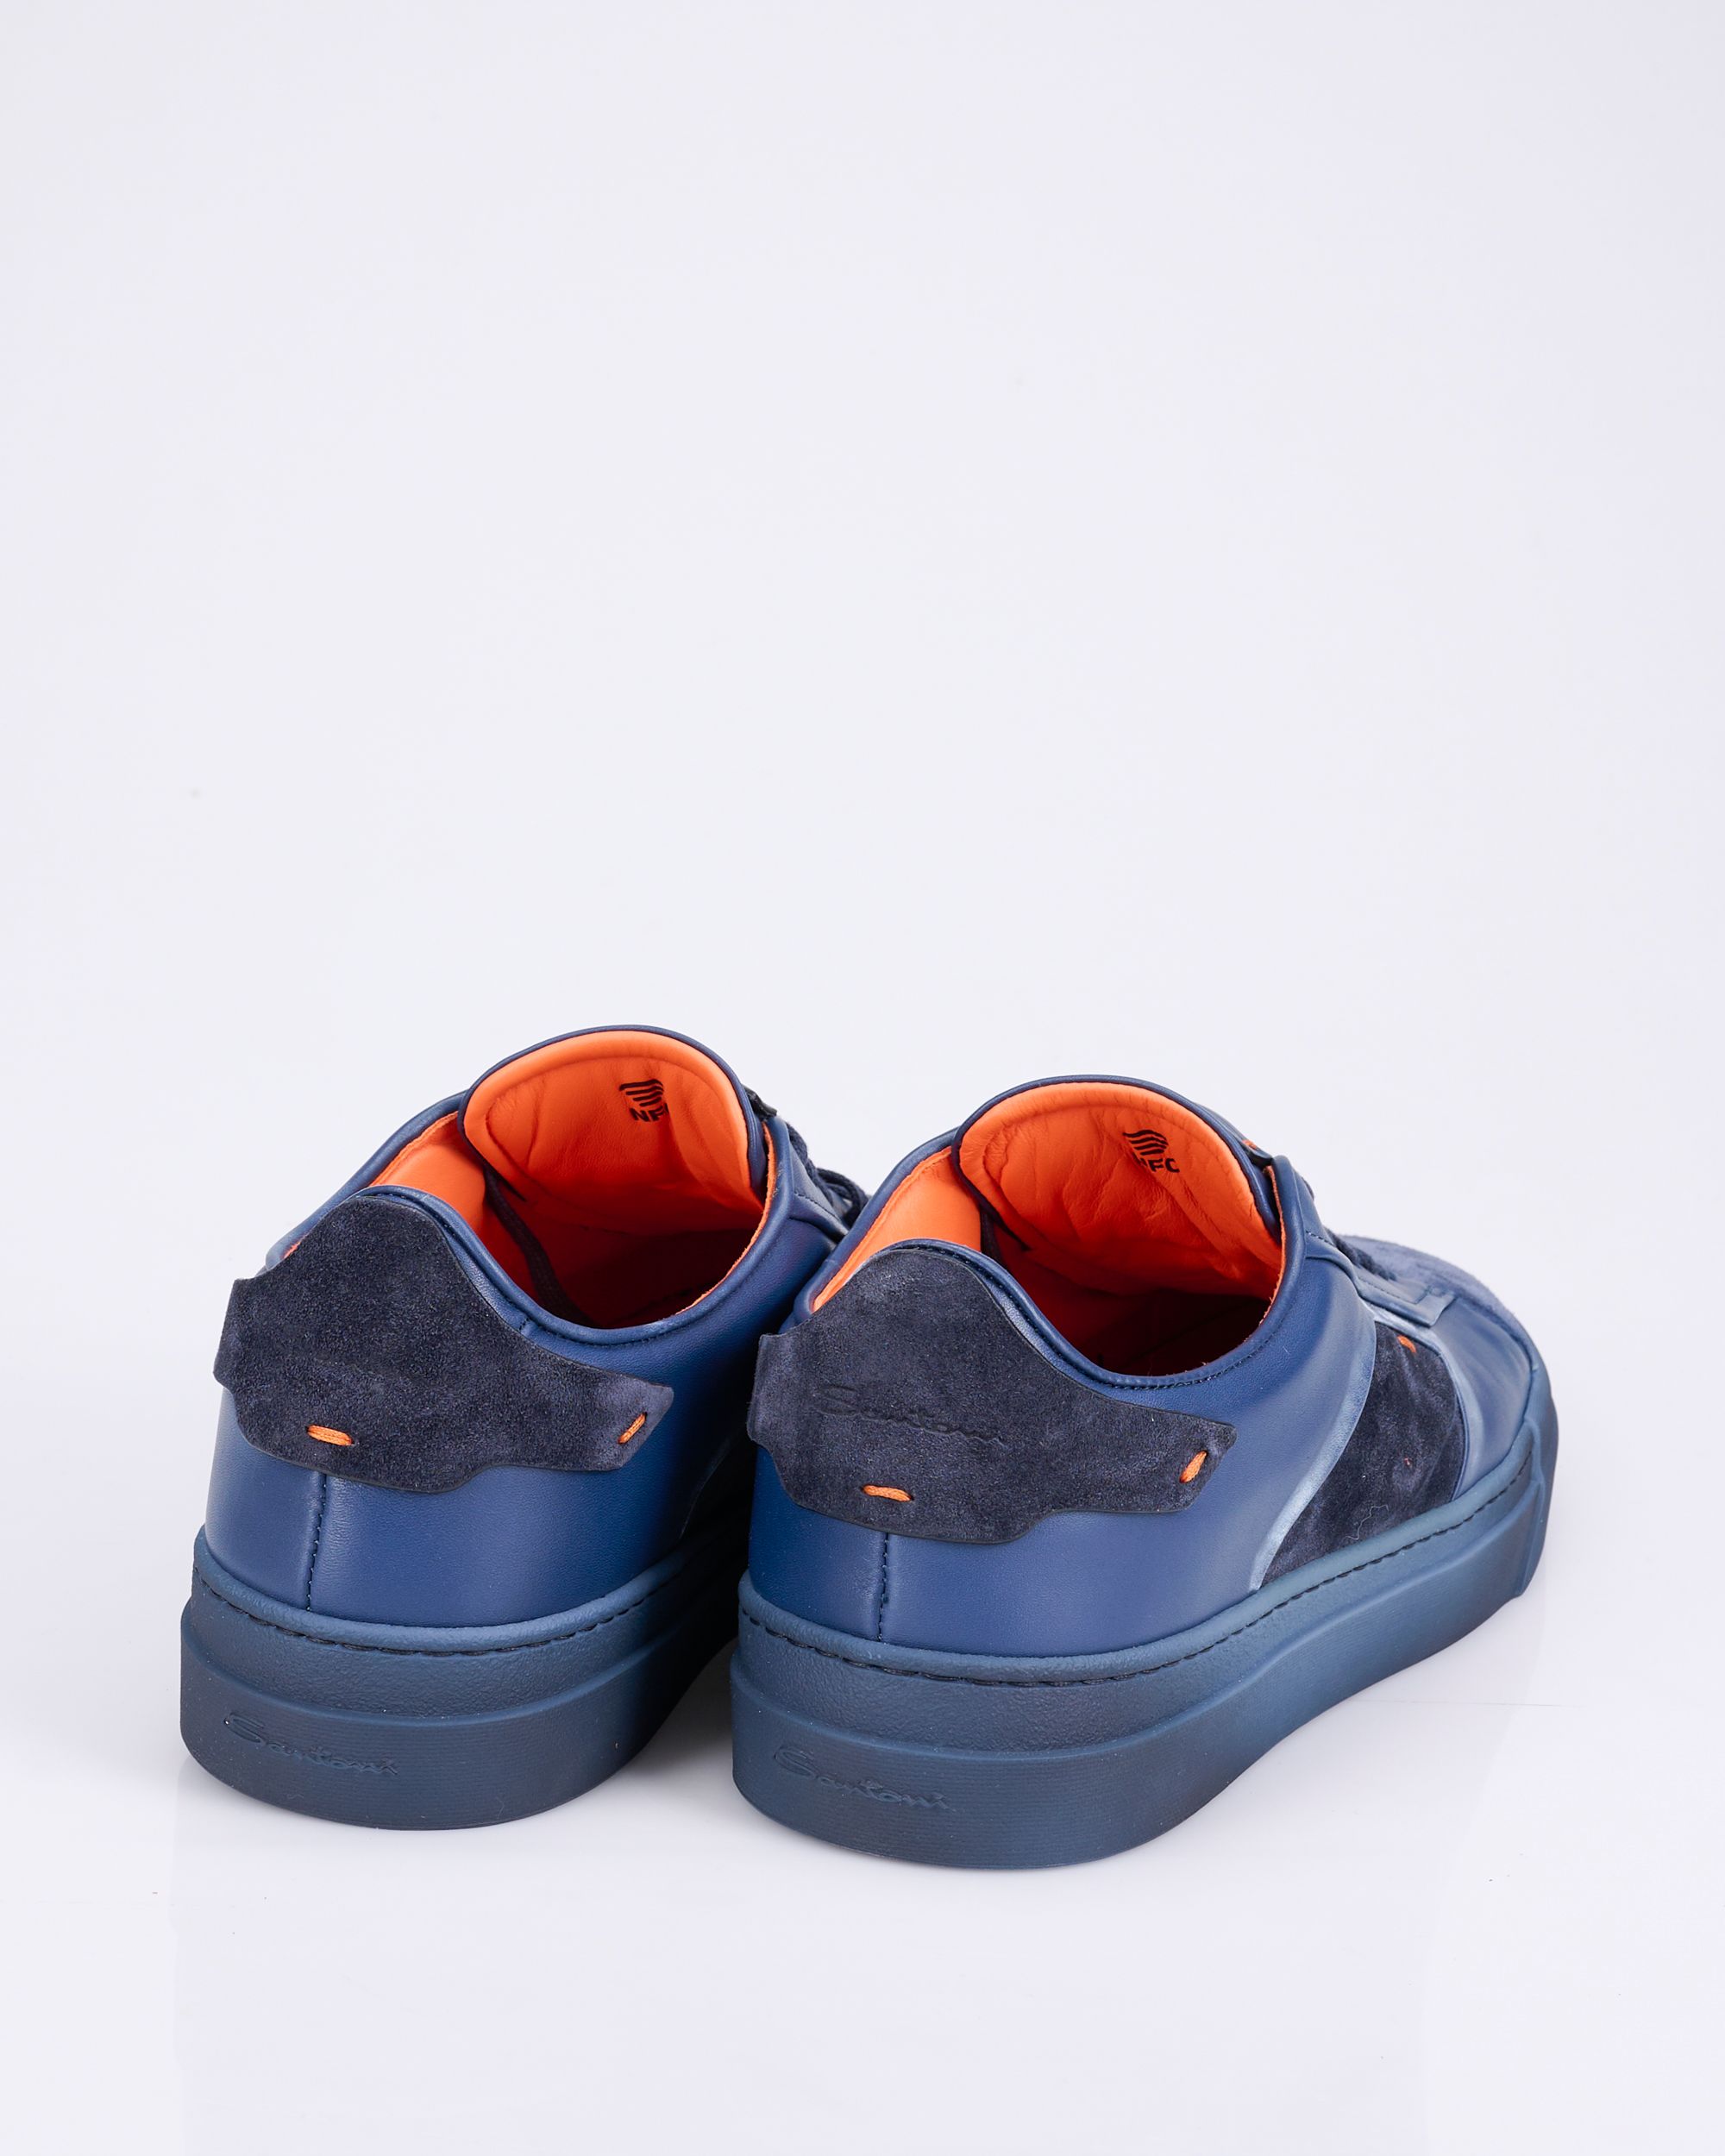 Santoni - FIFE-AXLU66 Sneakers Blauw 081371-001-10